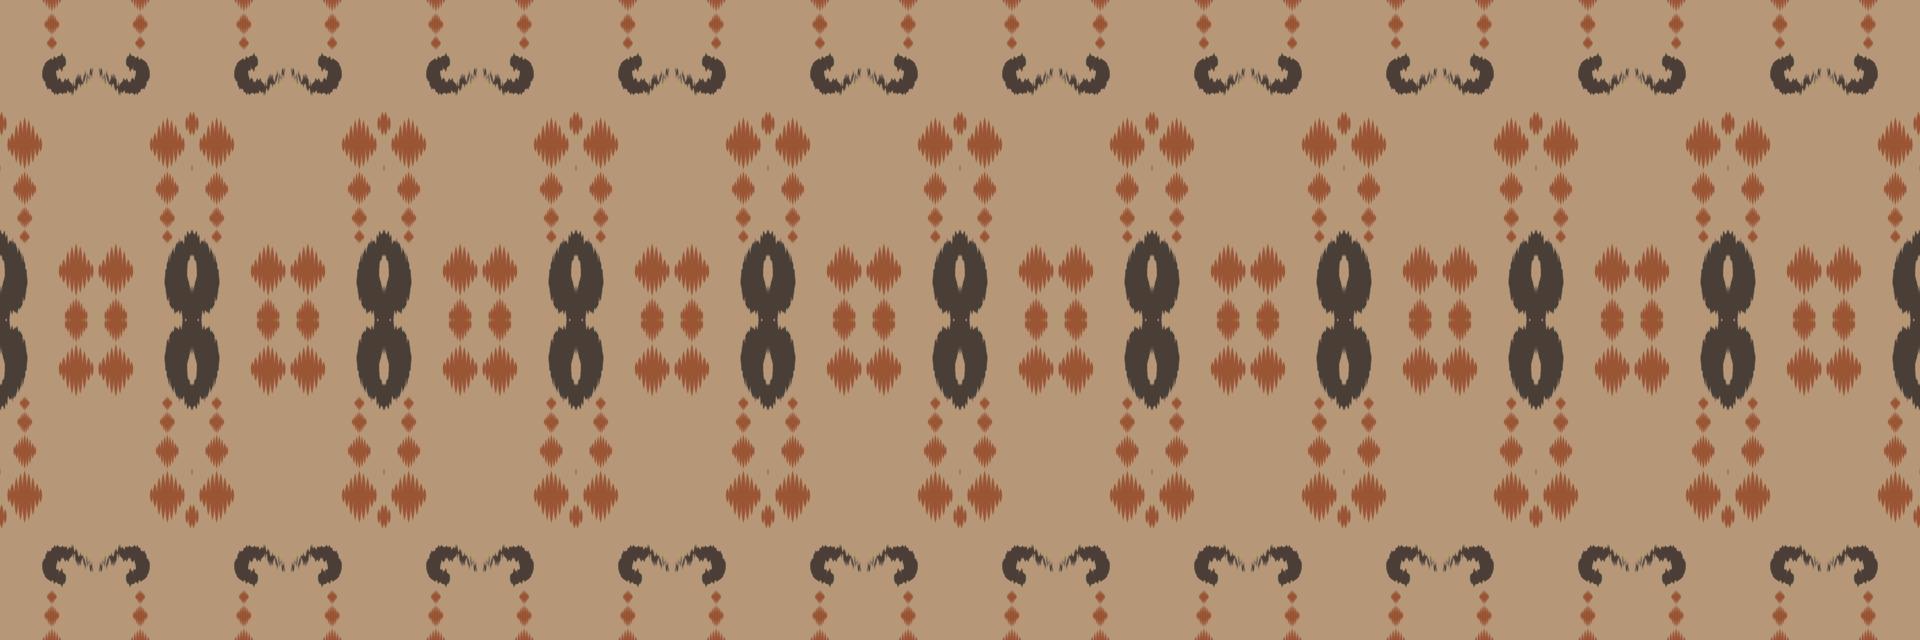 padrão sem emenda de ikat listra tribal chevron. étnico geométrico batik ikkat design têxtil de vetor digital para estampas tecido saree mughal pincel símbolo faixas textura kurti kurtis kurtas